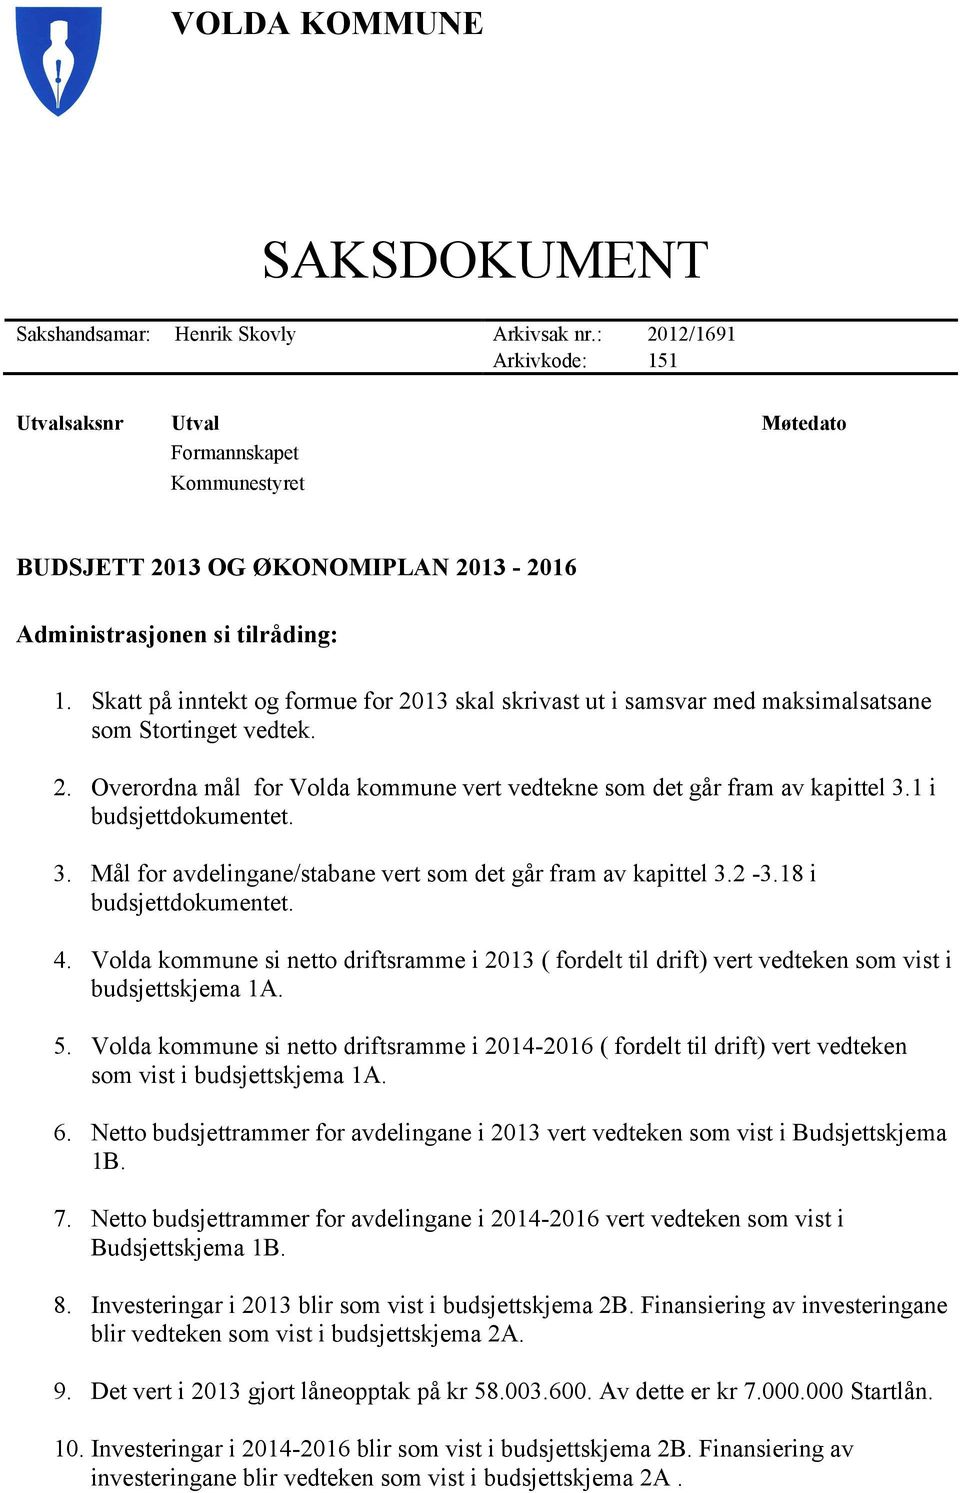 Skatt på inntekt og formue for 2013 skal skrivast ut i samsvar med maksimalsatsane som Stortinget vedtek. 2. Overordna mål for Volda kommune vert vedtekne som det går fram av kapittel 3.